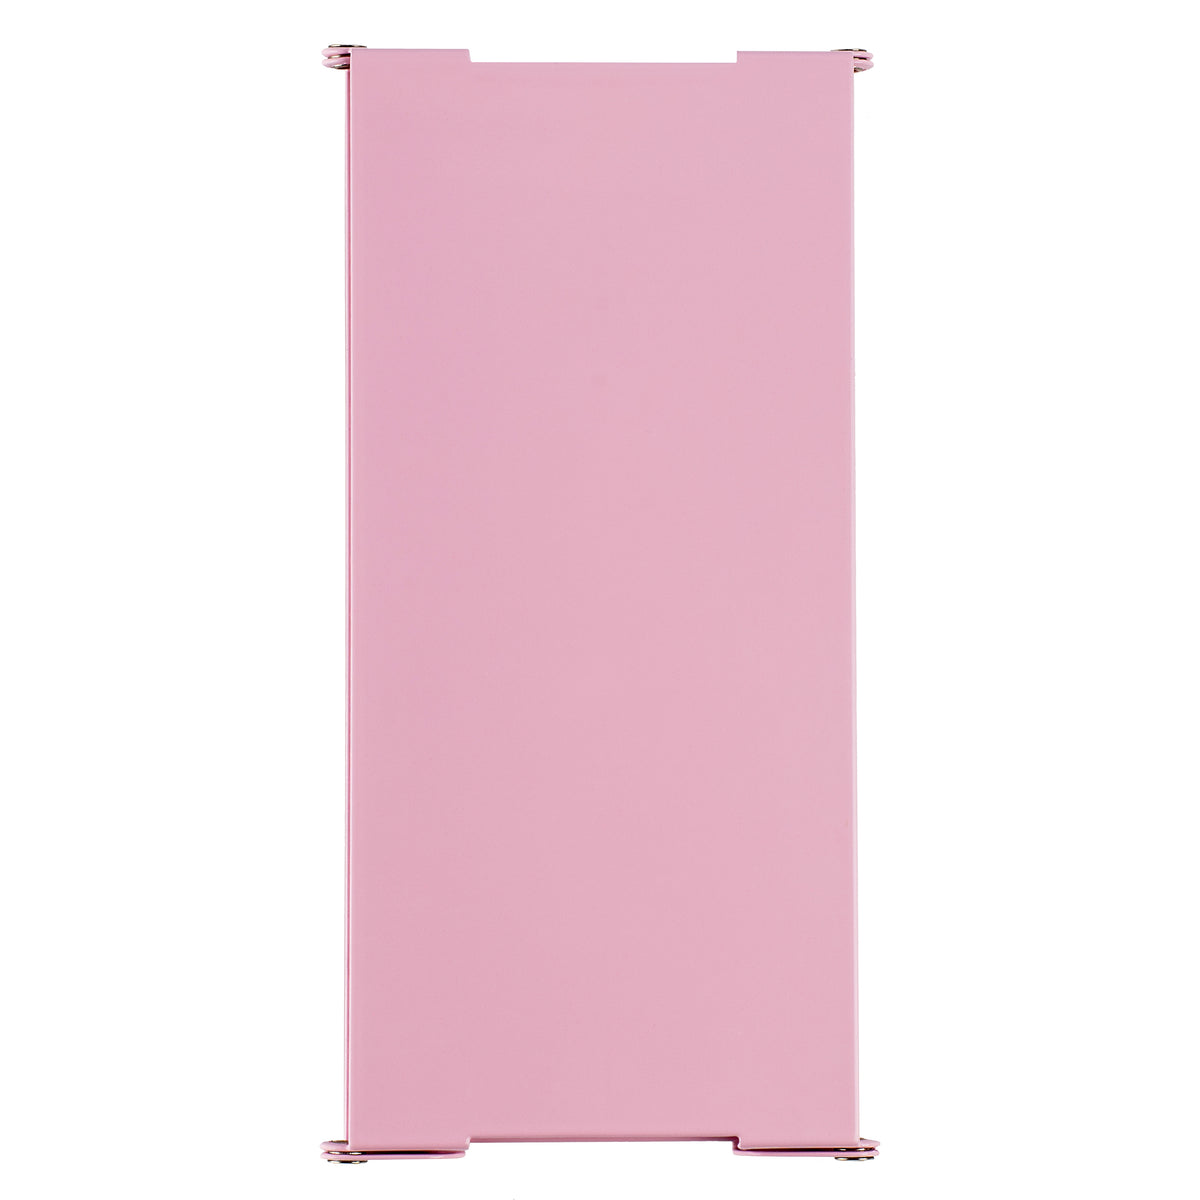 Nursing Clipboard - Pink OUTLET